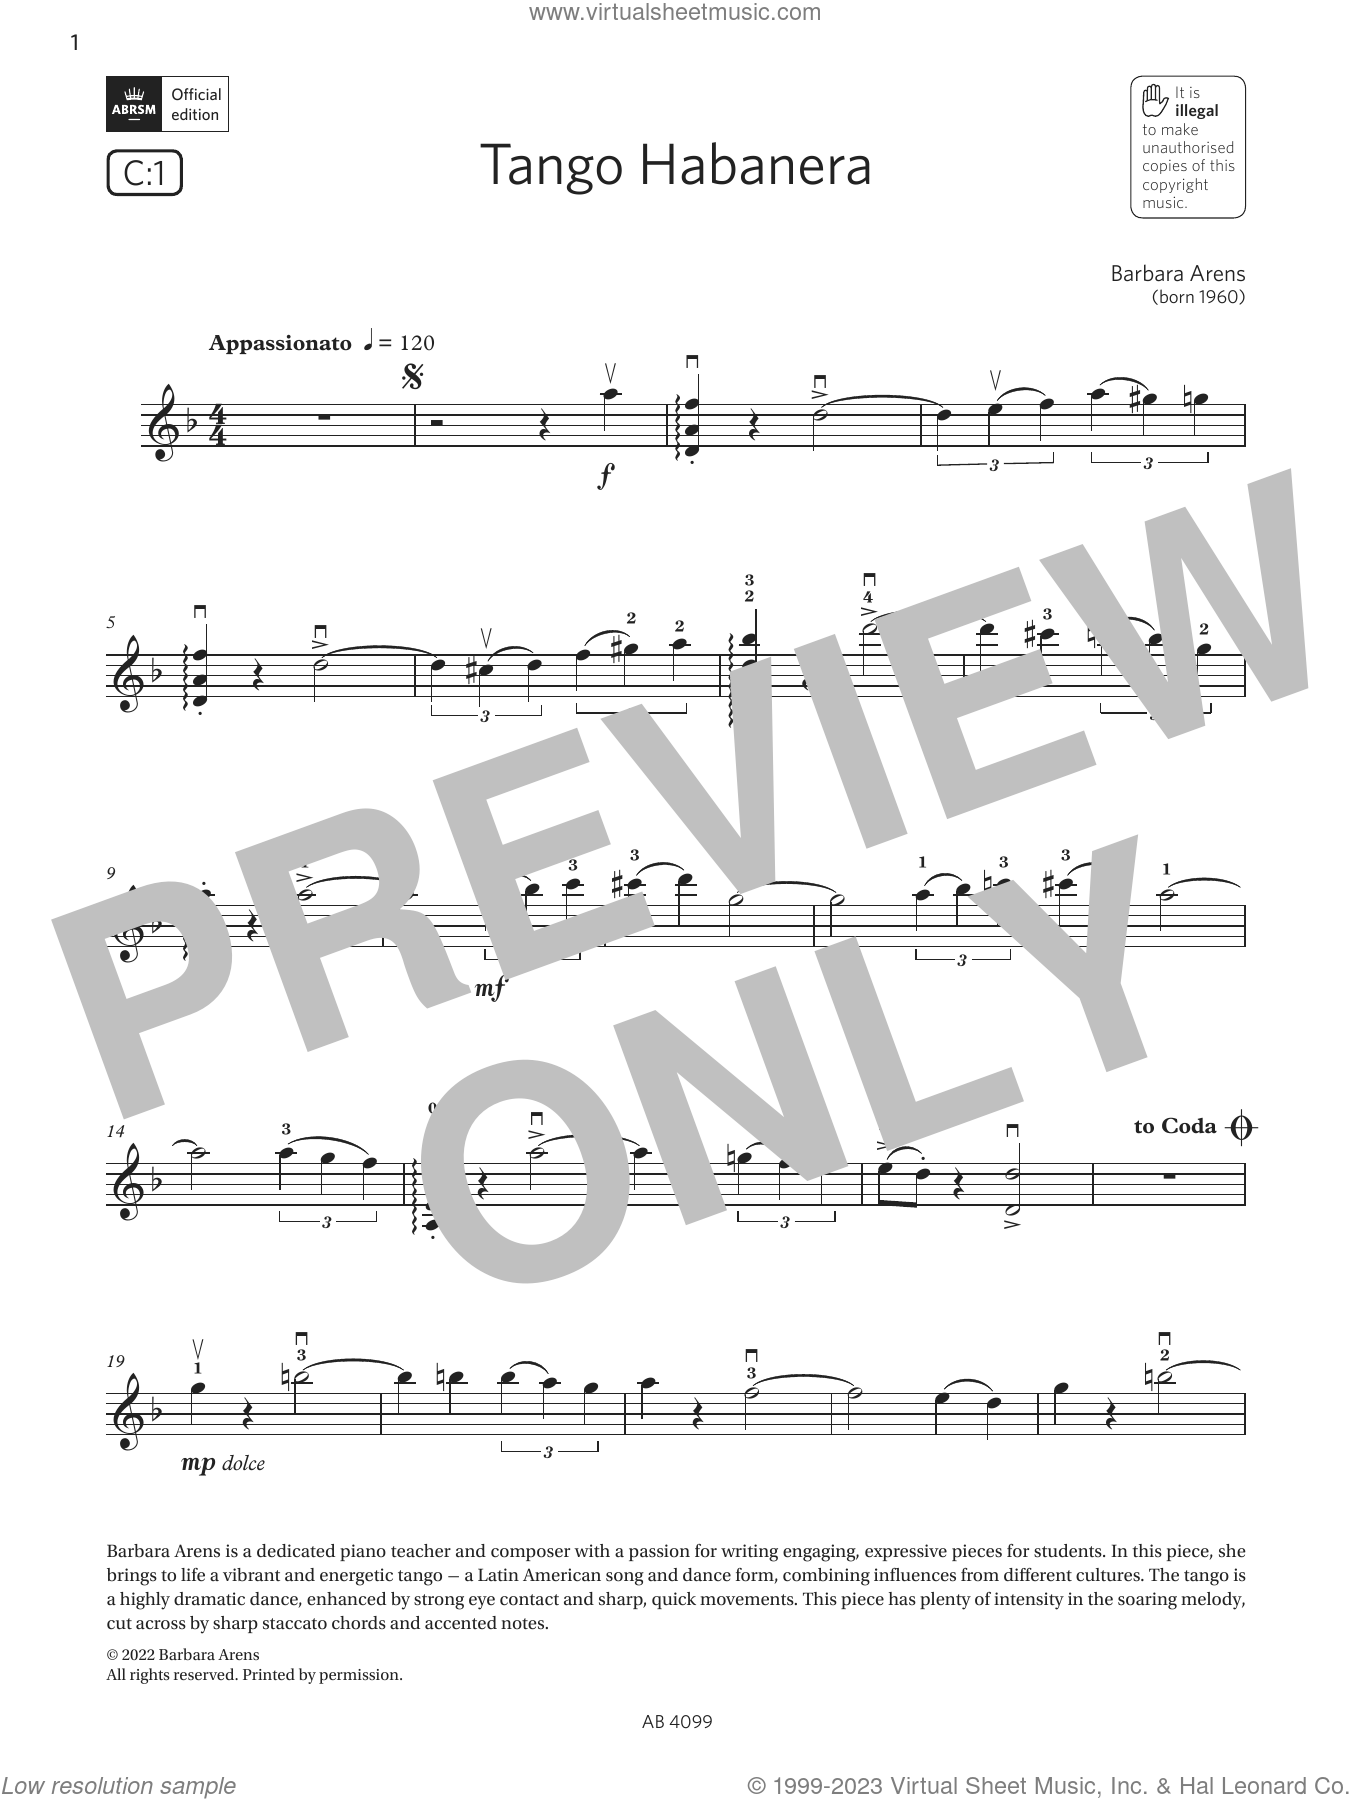 Tango II (Habanera) - Tango II (Habanera) Sheet music for Piano